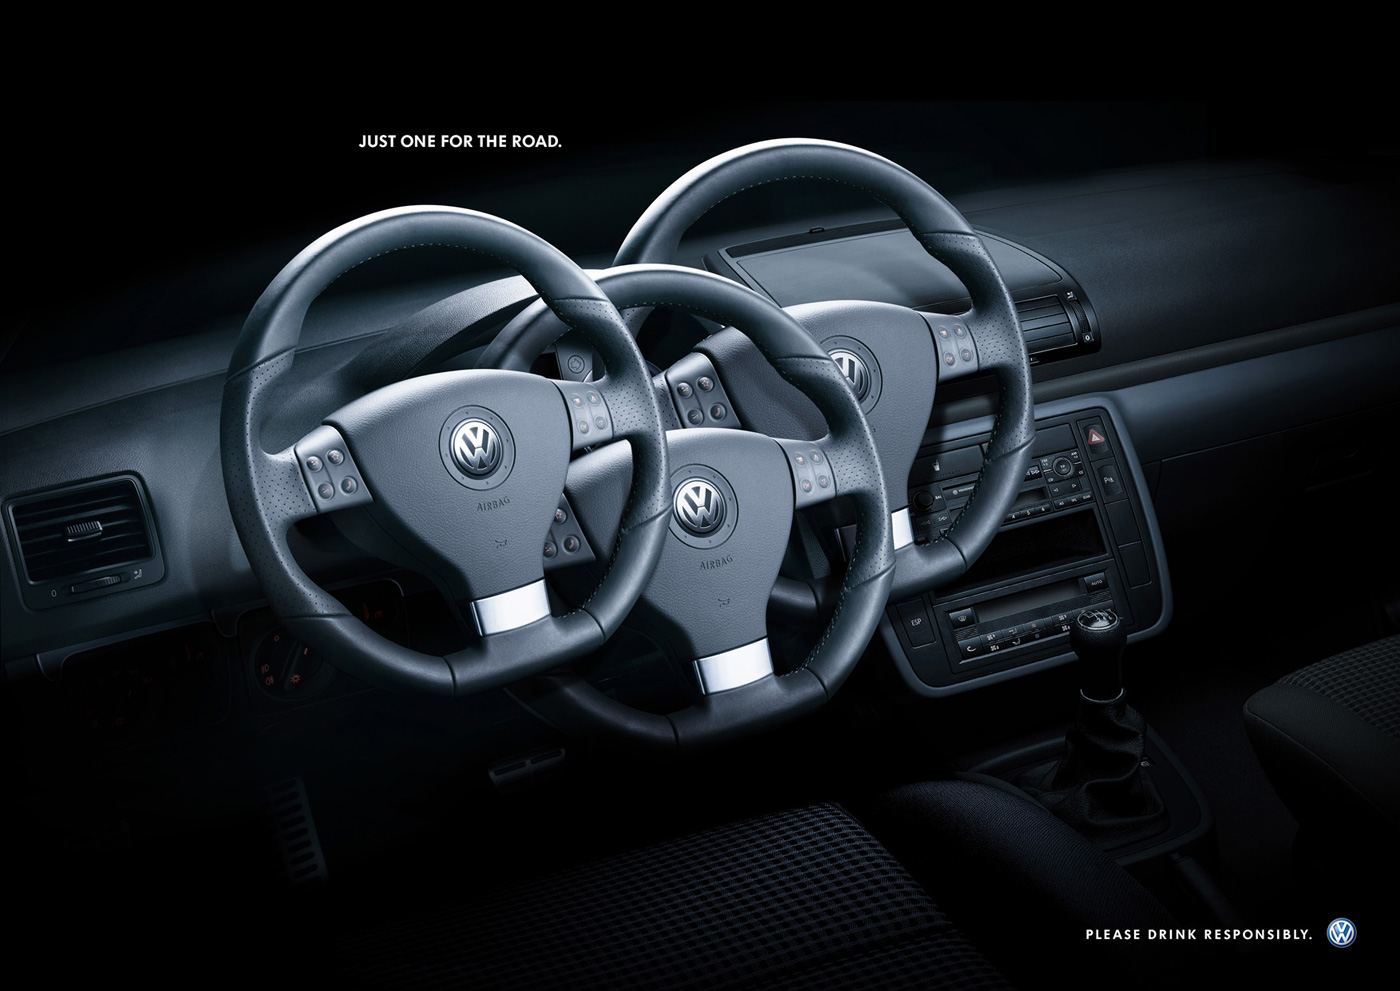 volkswagen大众汽车创意平面广告设计:一路.